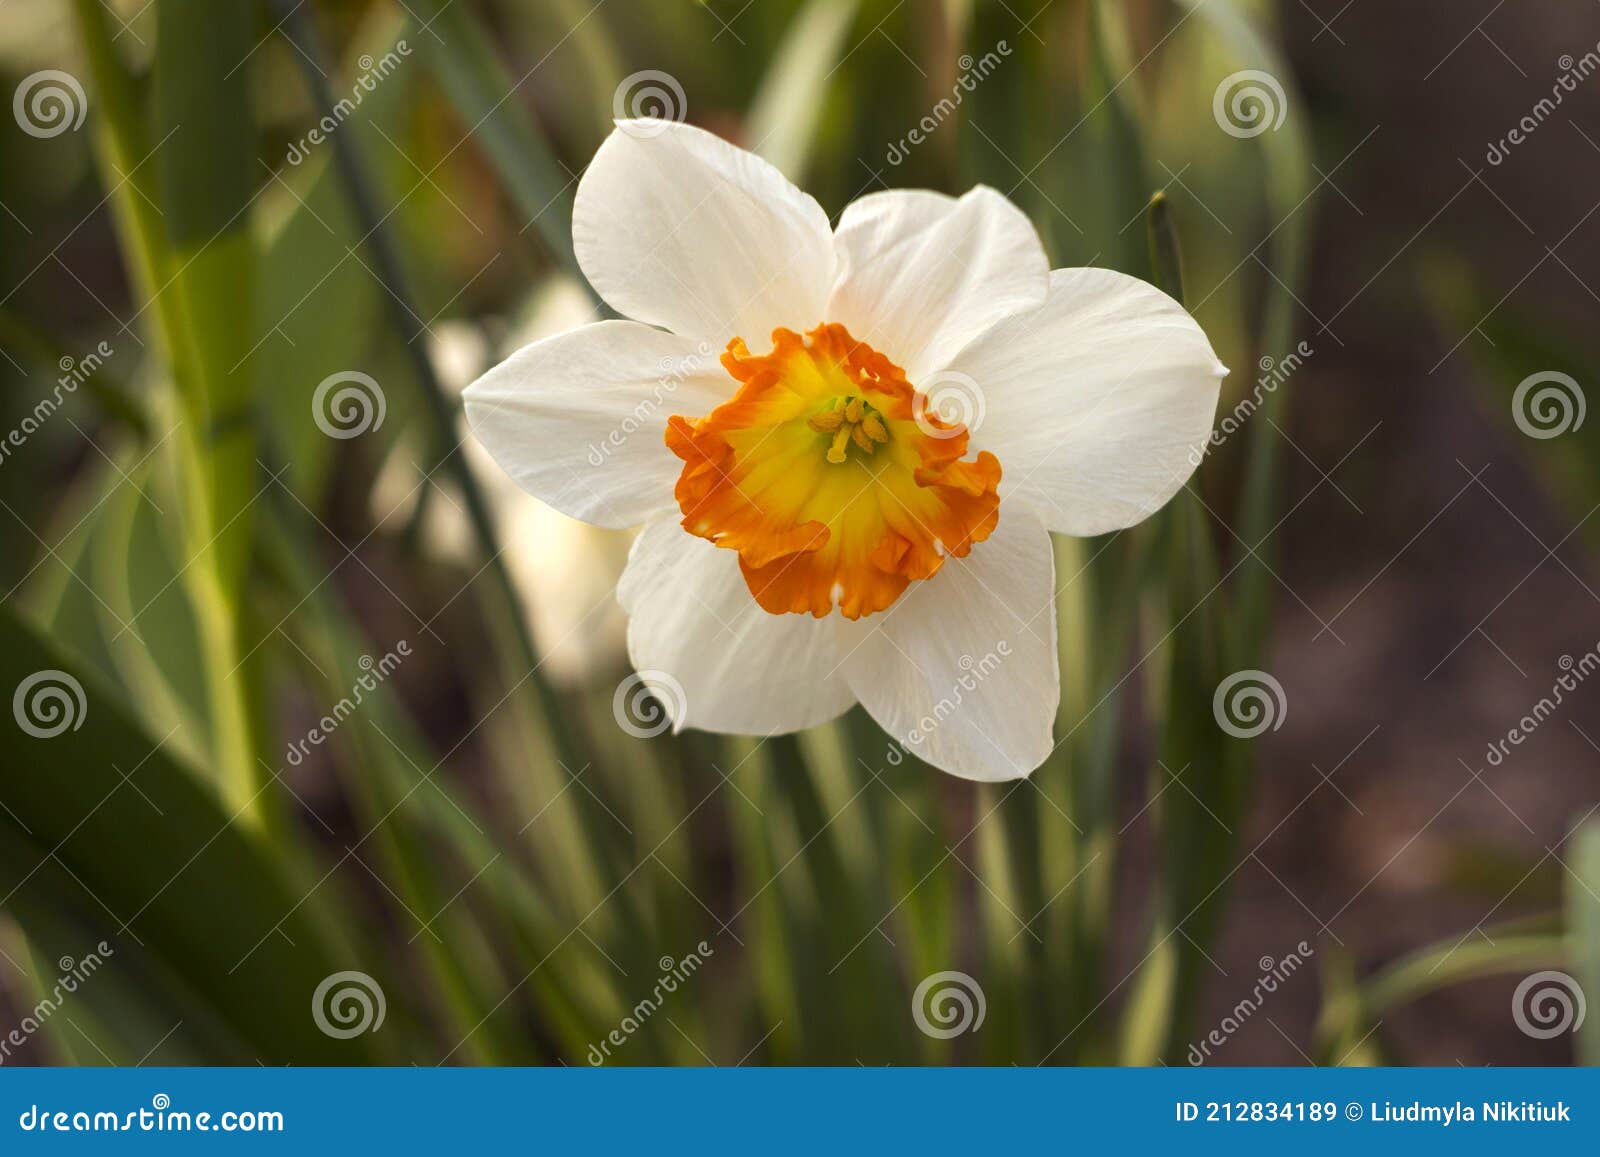 Jonquille Blanche Avec étamine Centrale Orange. Fleur De Fleurs De  Printemps Dans Le Jardin Image stock - Image du lumineux, frais: 212834189